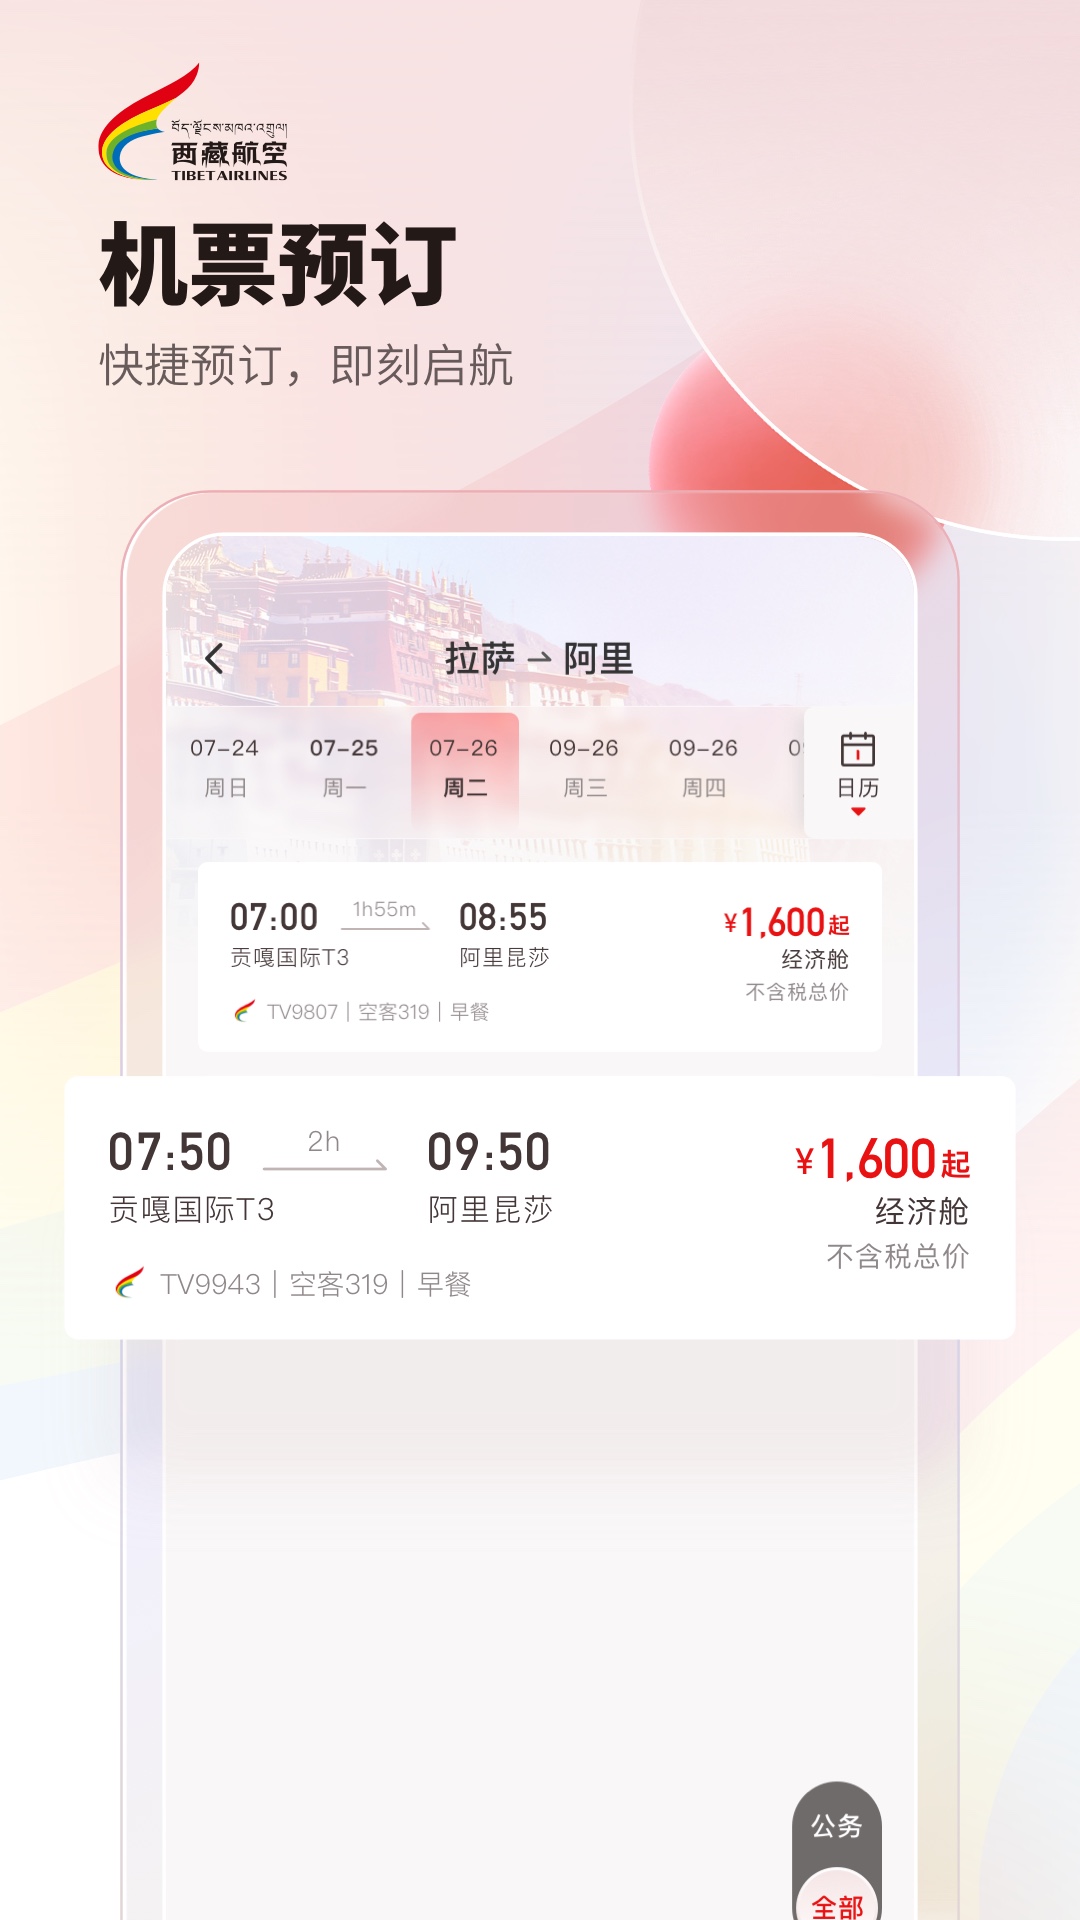 飞机app下载中文版安卓安装包-飞机app下载中文版安卓安装包下载不了